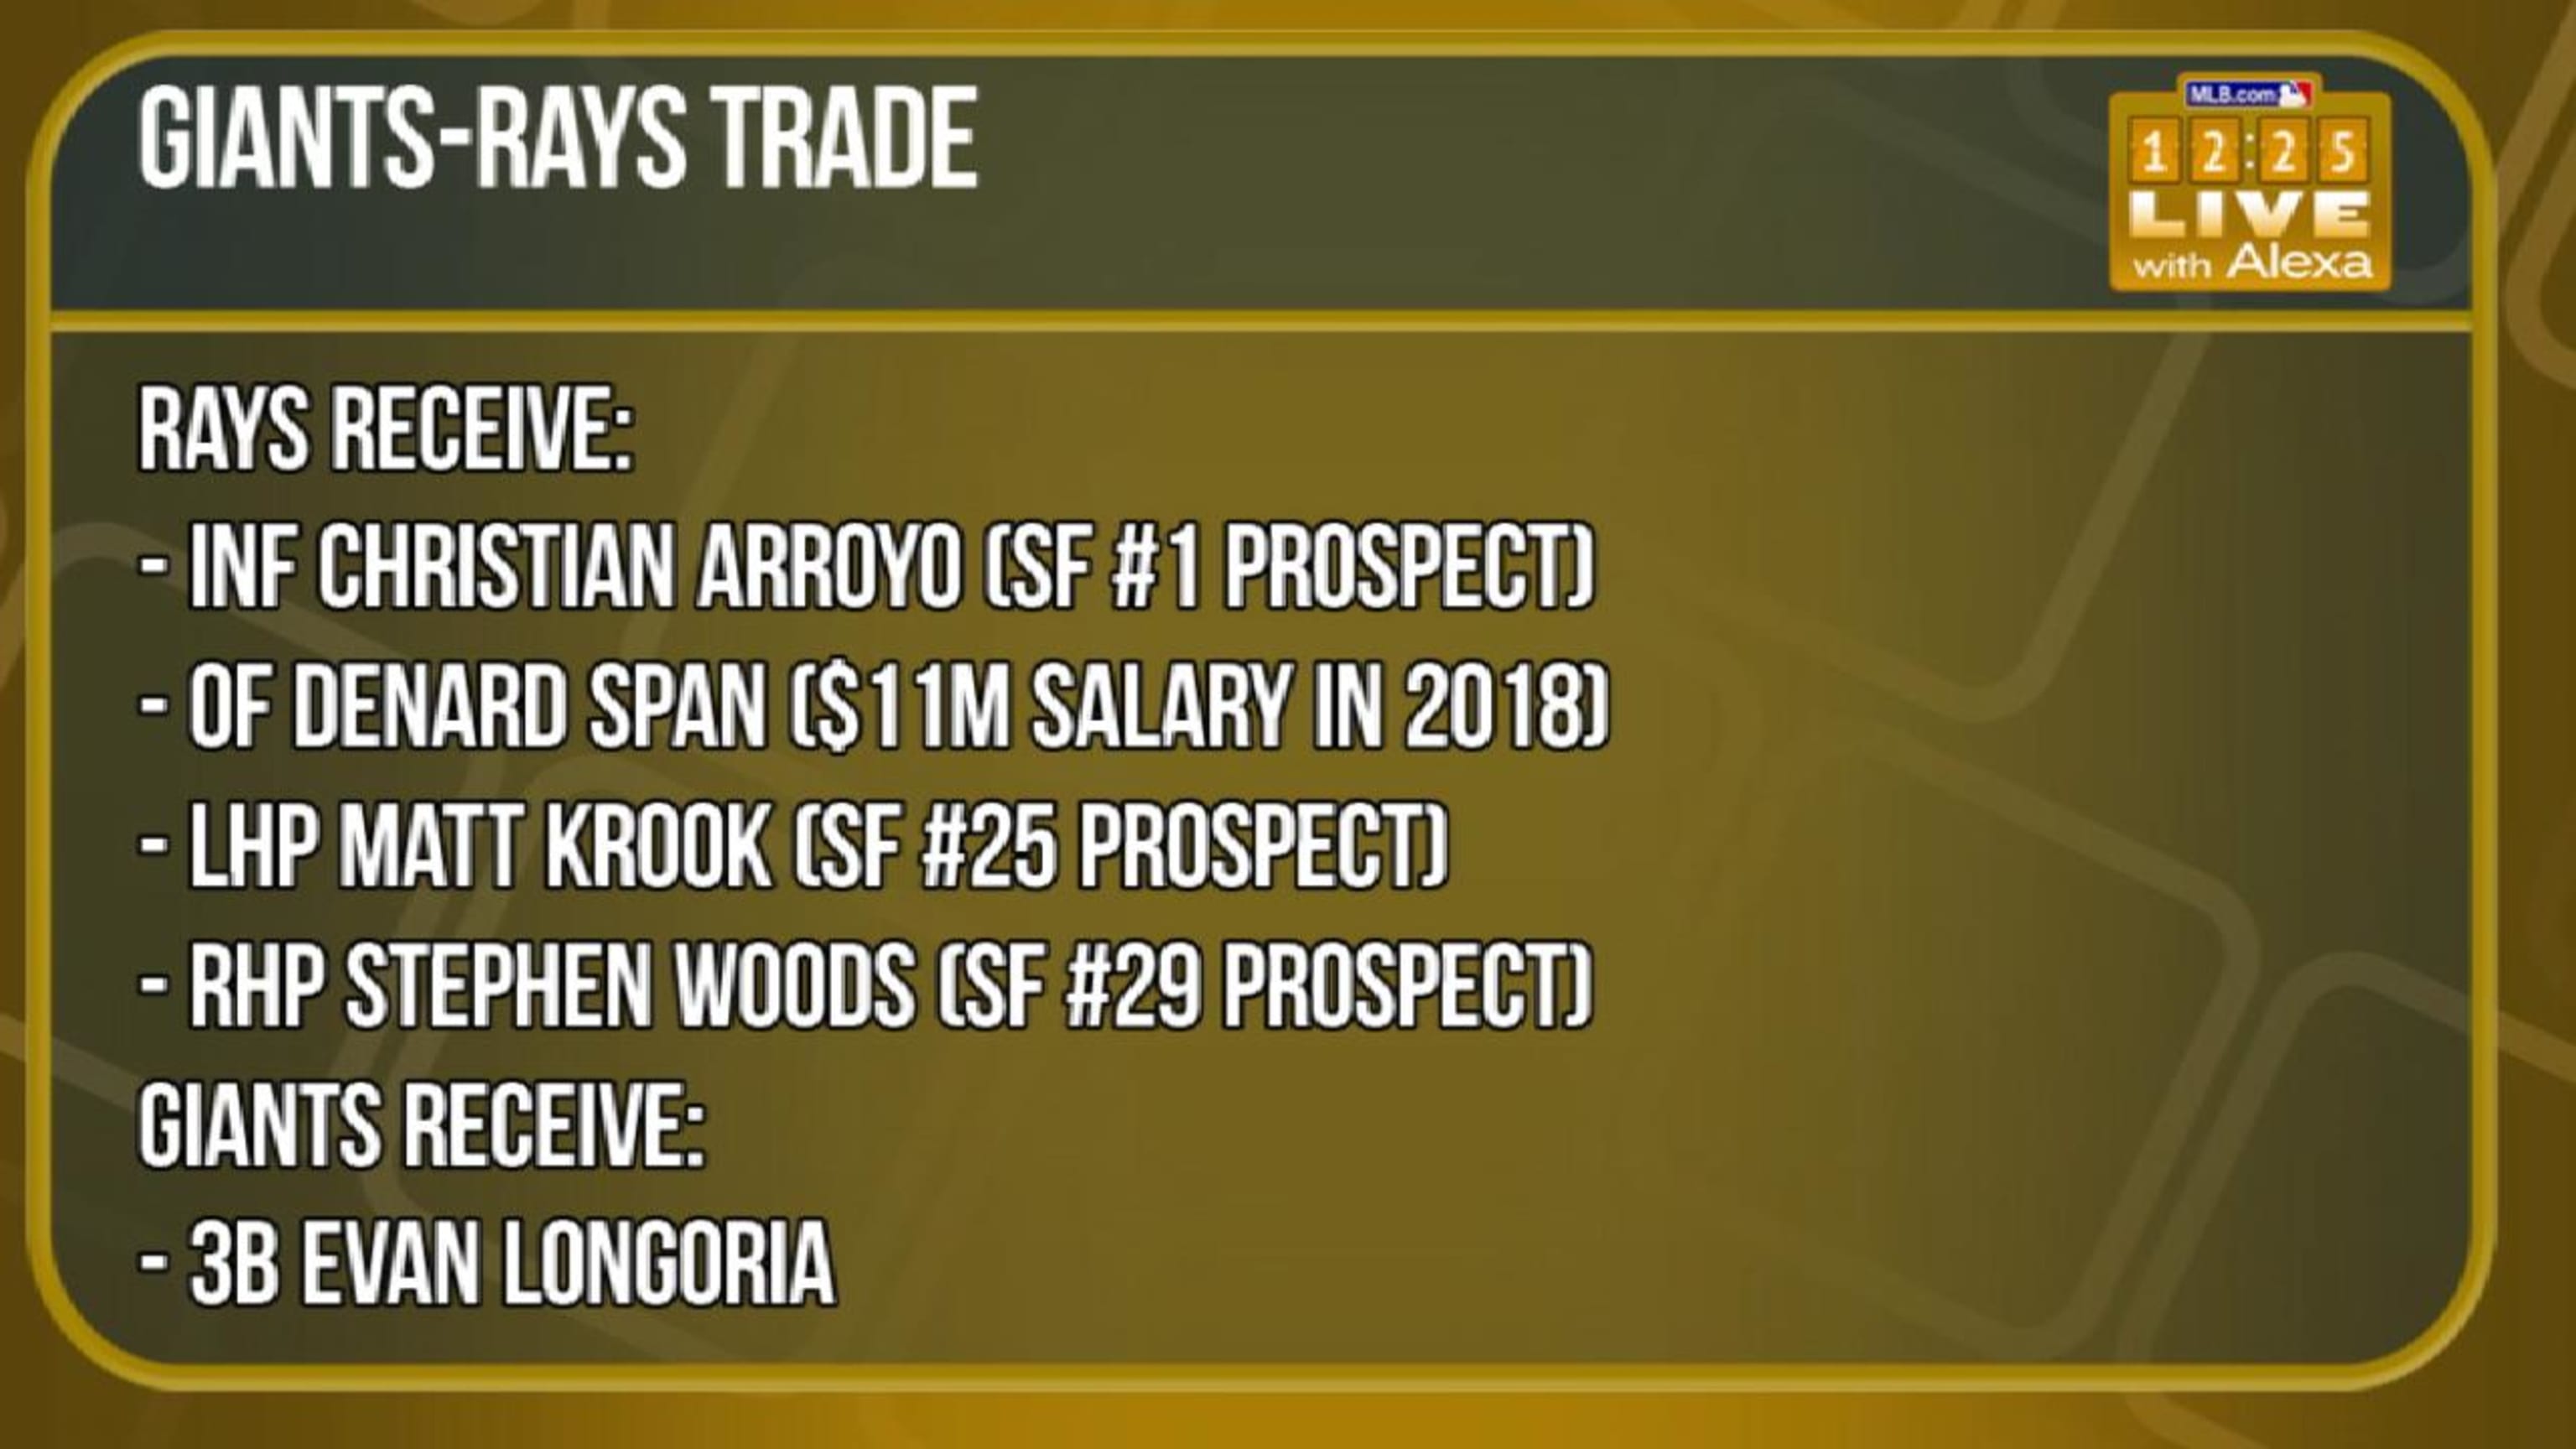 Rays trade Evan Longoria to Giants - Amazin' Avenue